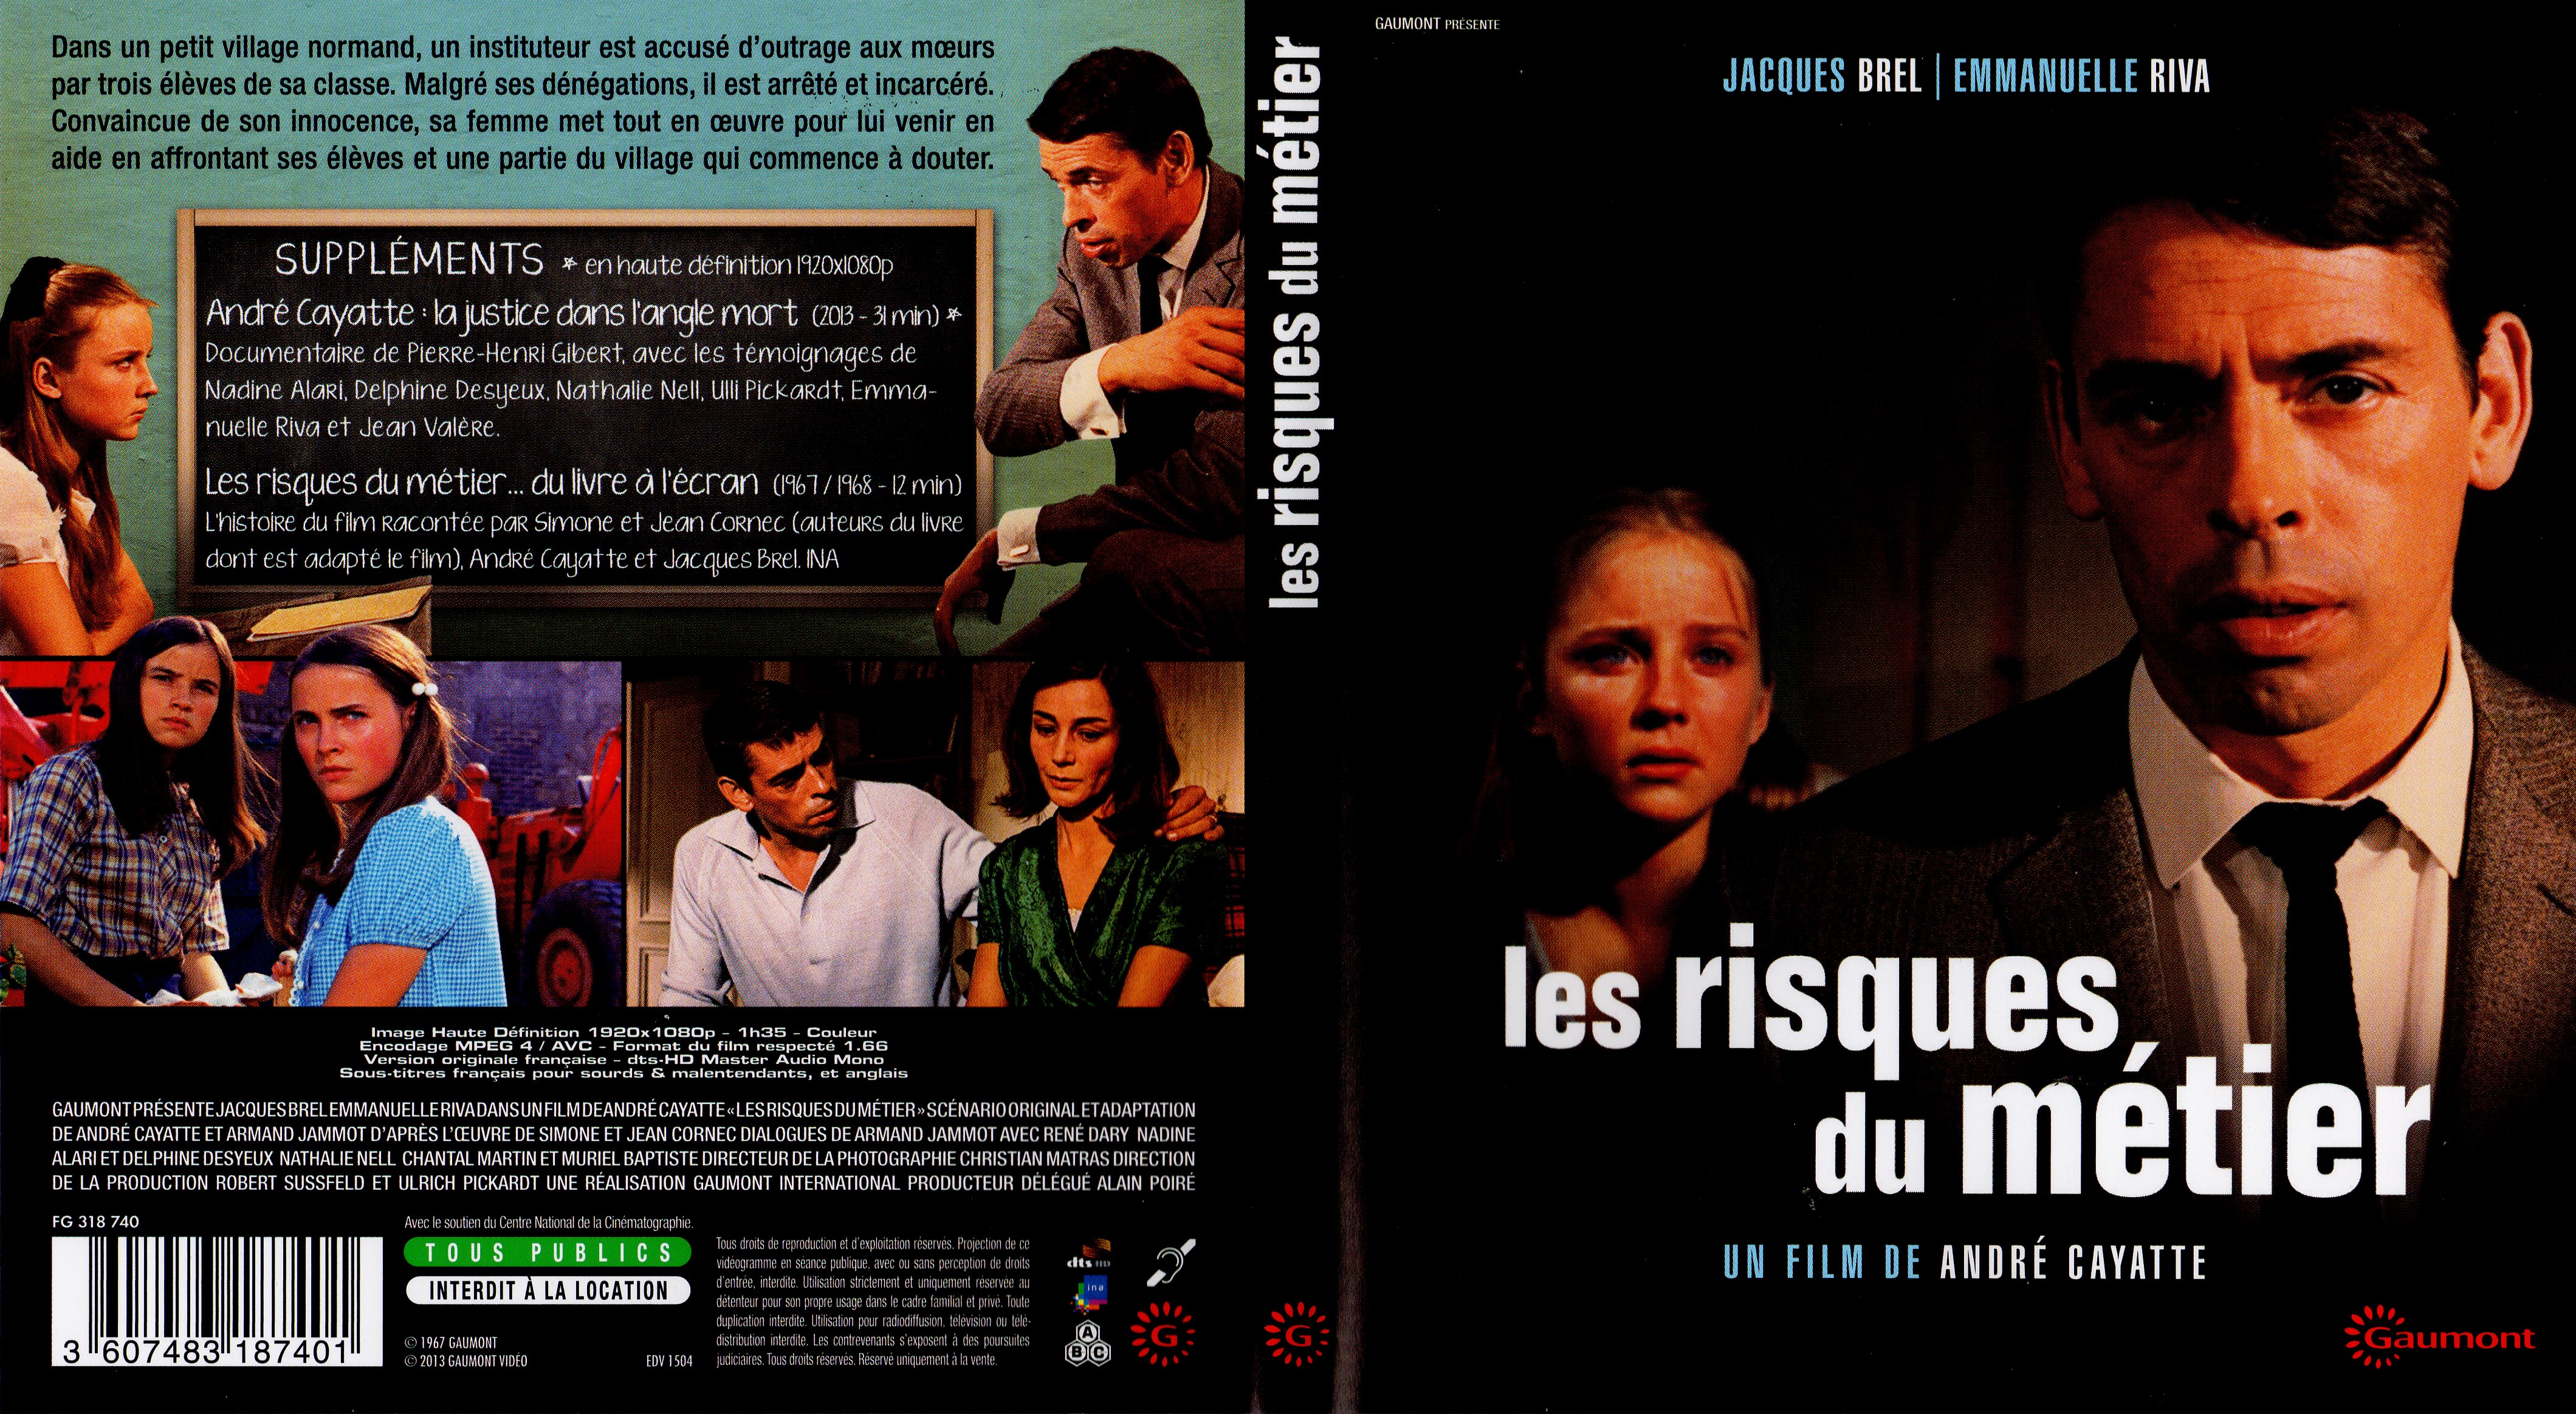 Jaquette DVD Les risques du metier (BLU-RAY)